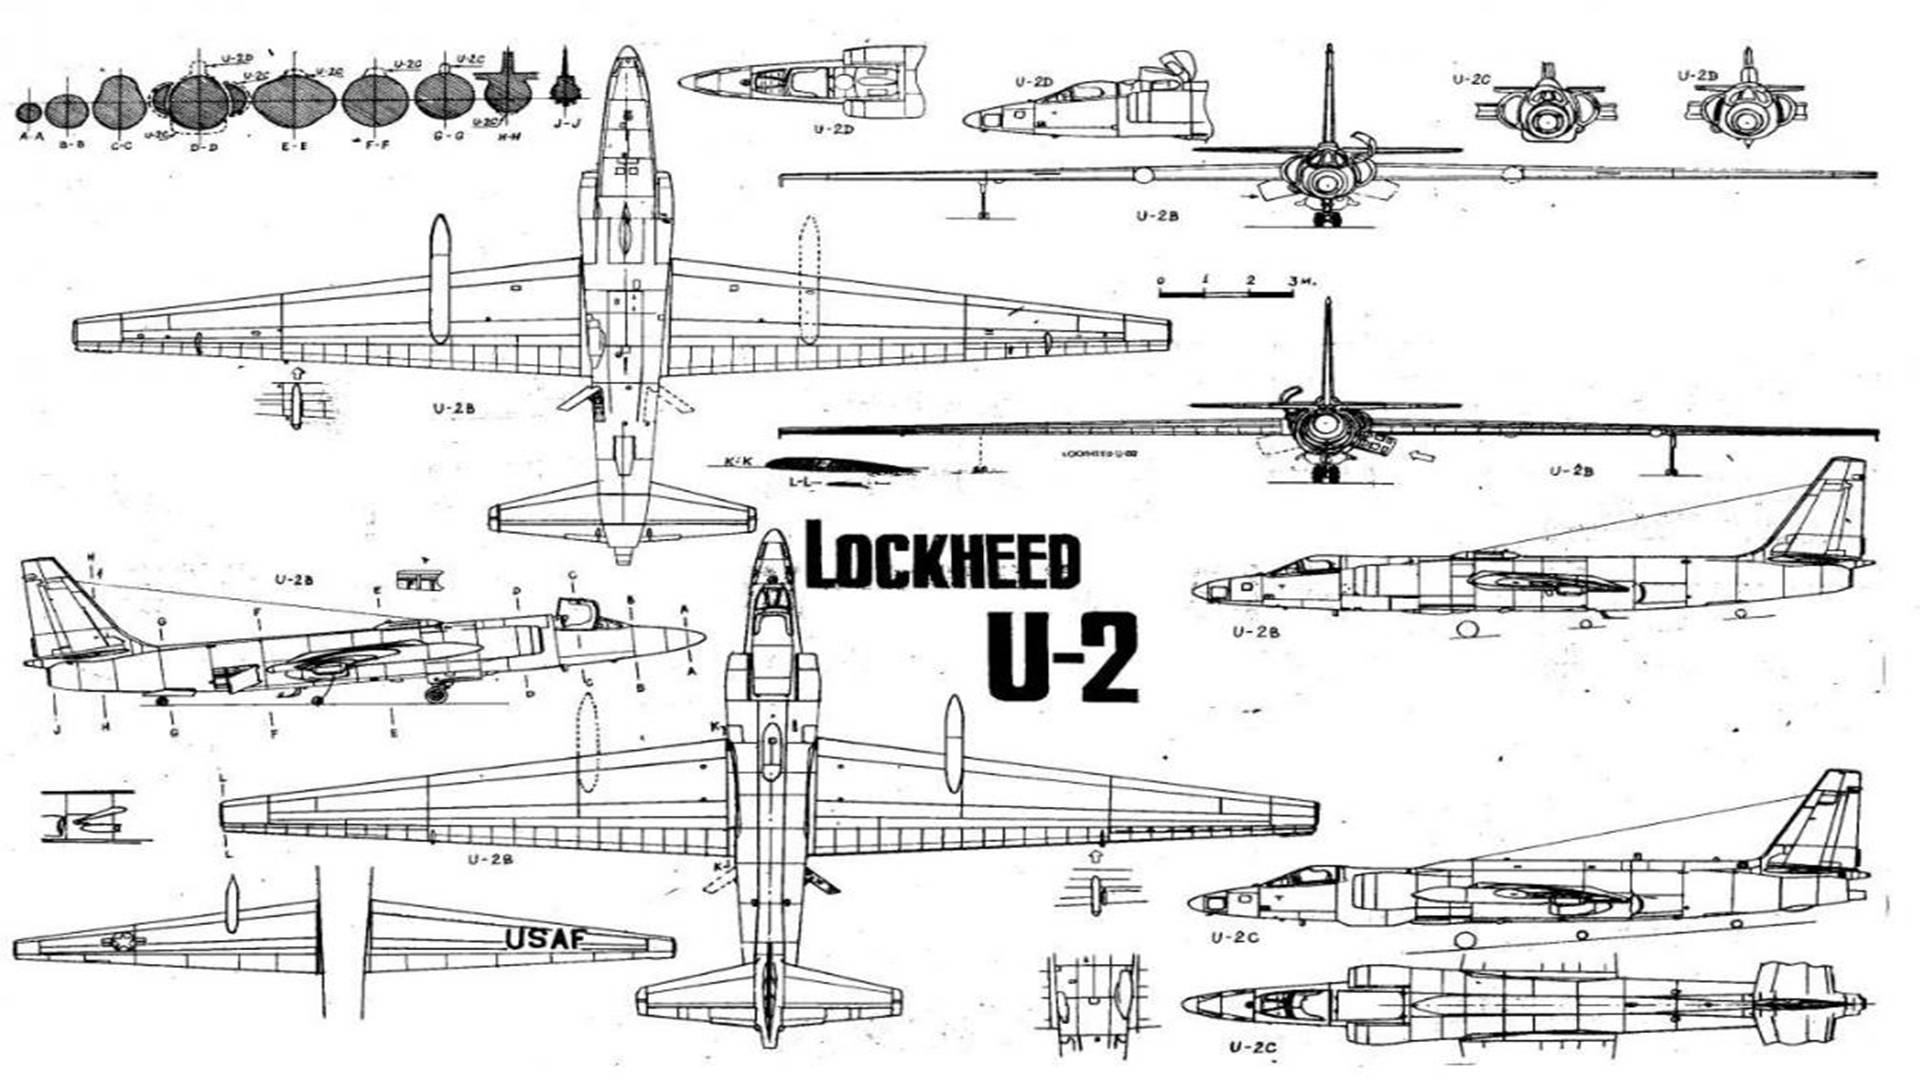 美苏两国的对抗升级,u-2侦察机事件,差点让世界走向战争边缘